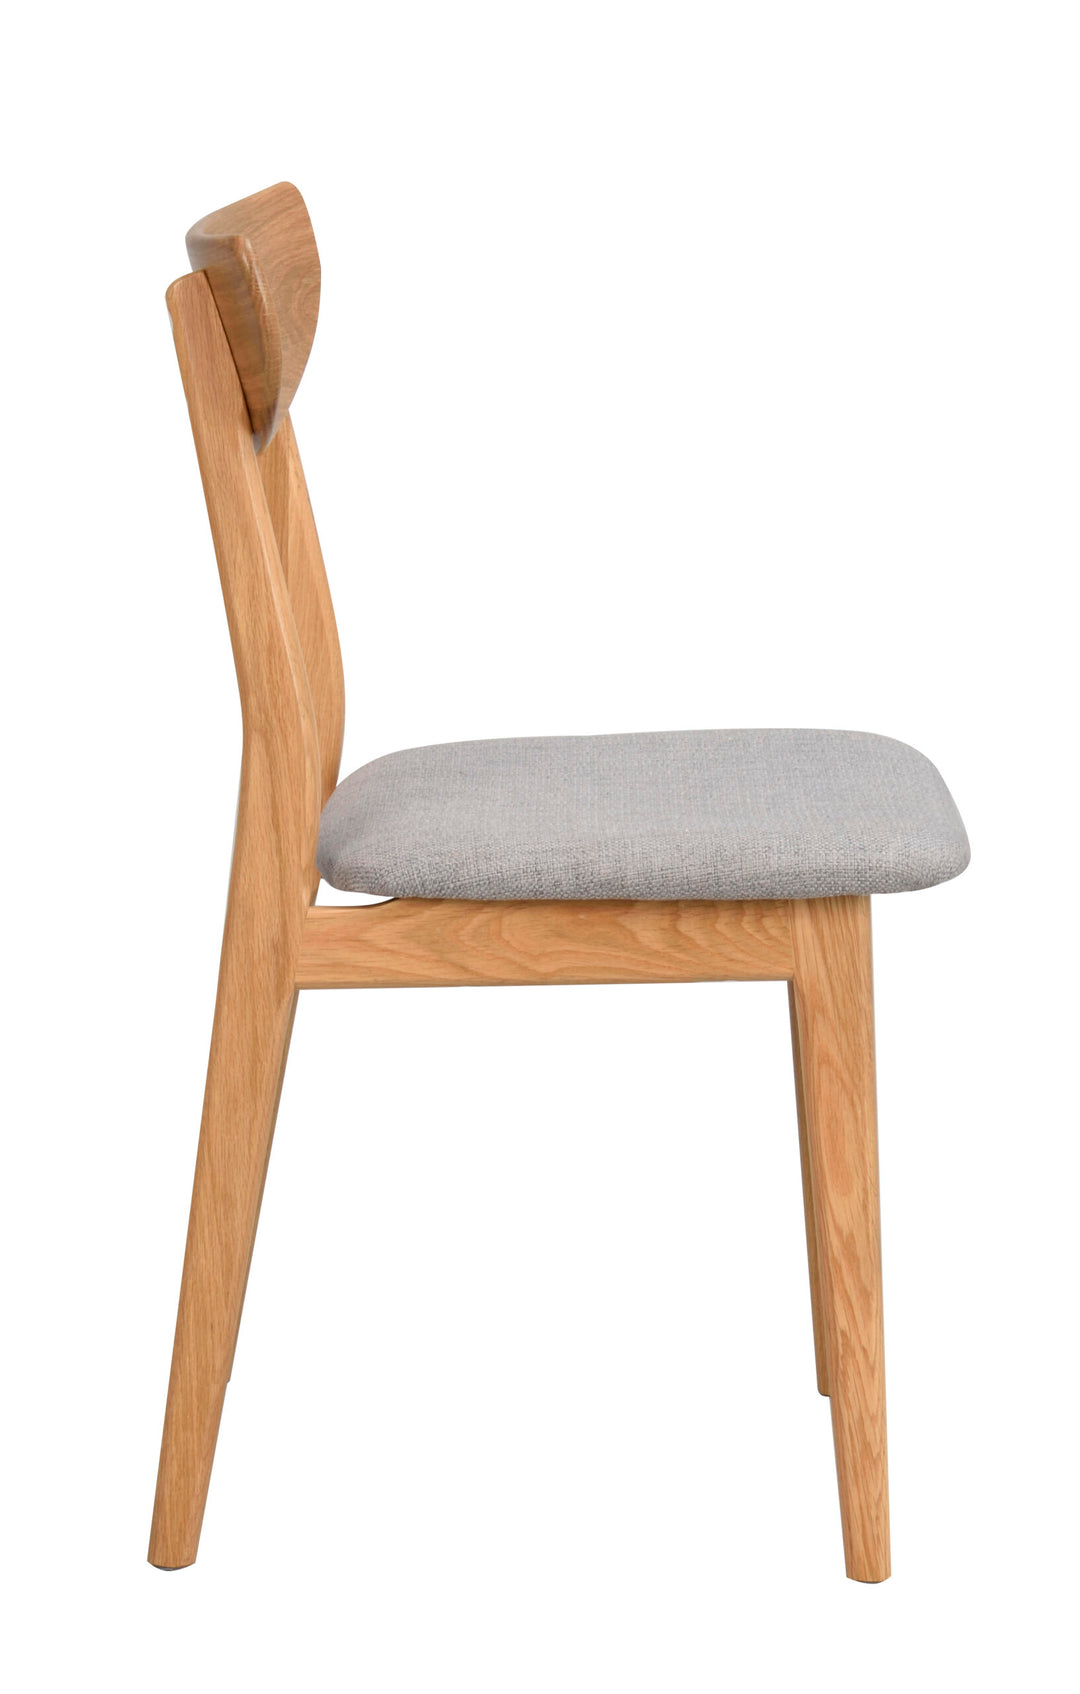 120065_c, Rodham chair, oak_grey